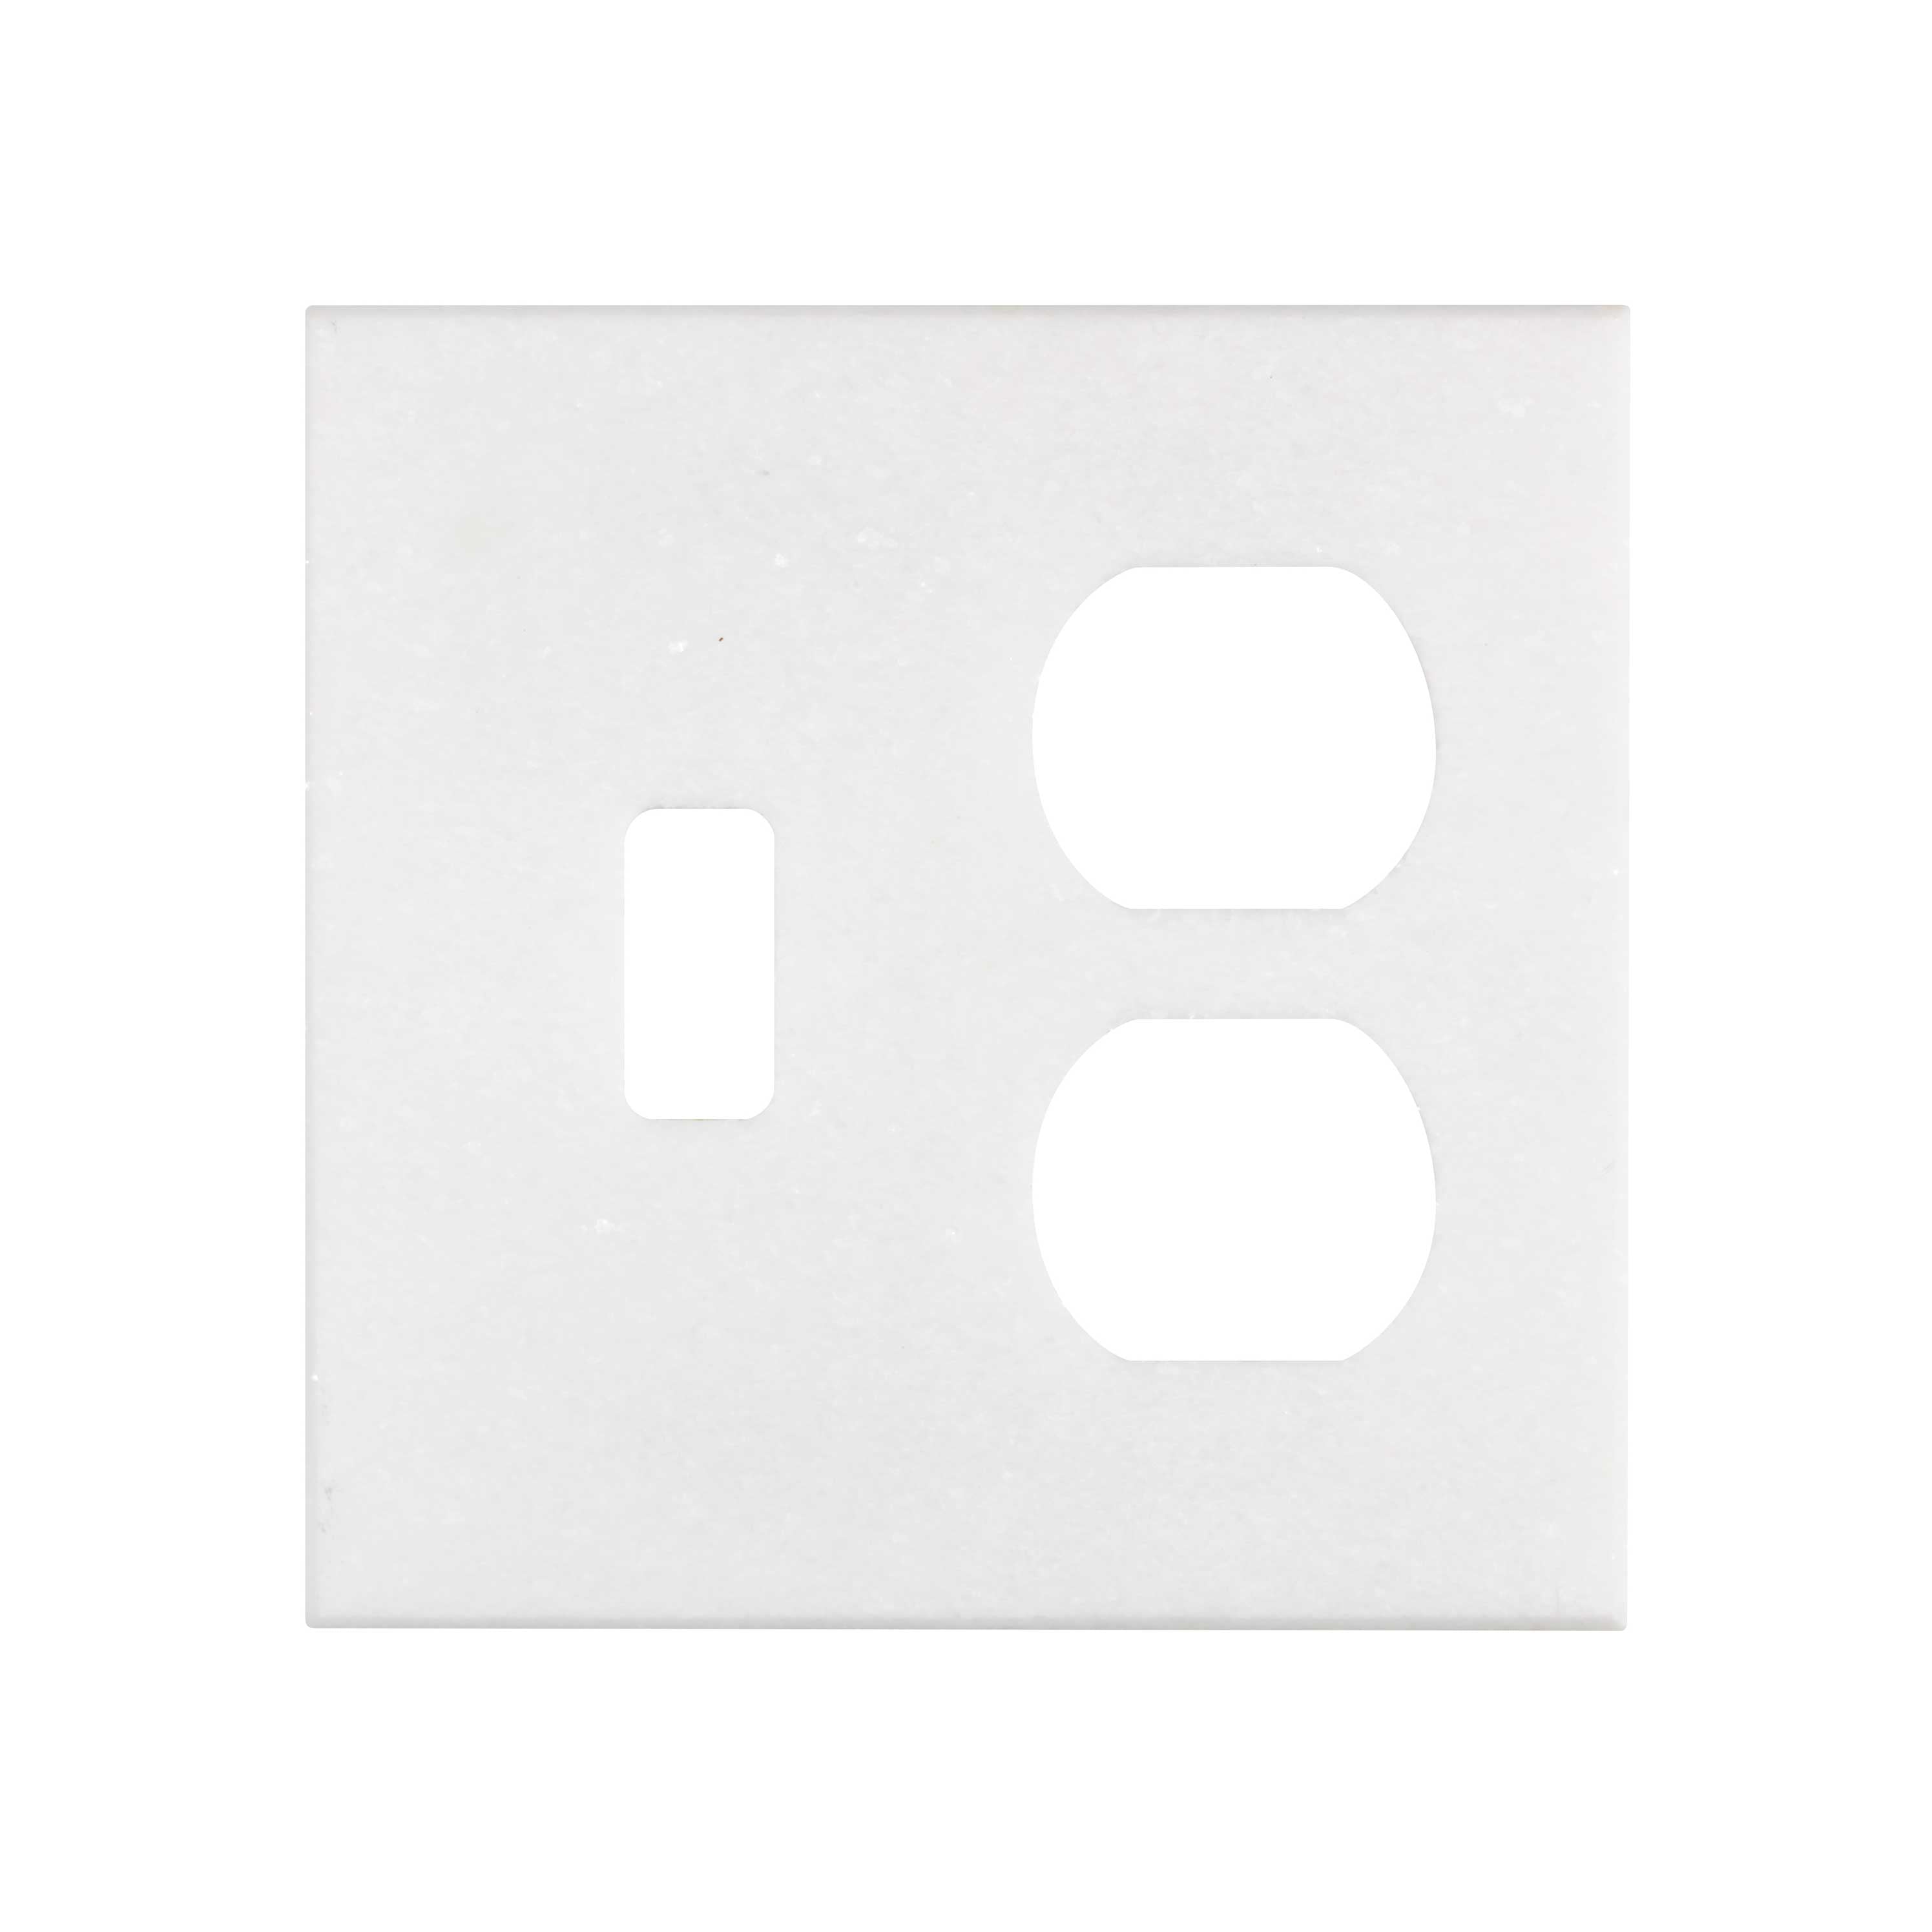 Thassos White (Greek)	Marble	TOGGLE - DUPLEX	4 1/2" X 4 1/2"